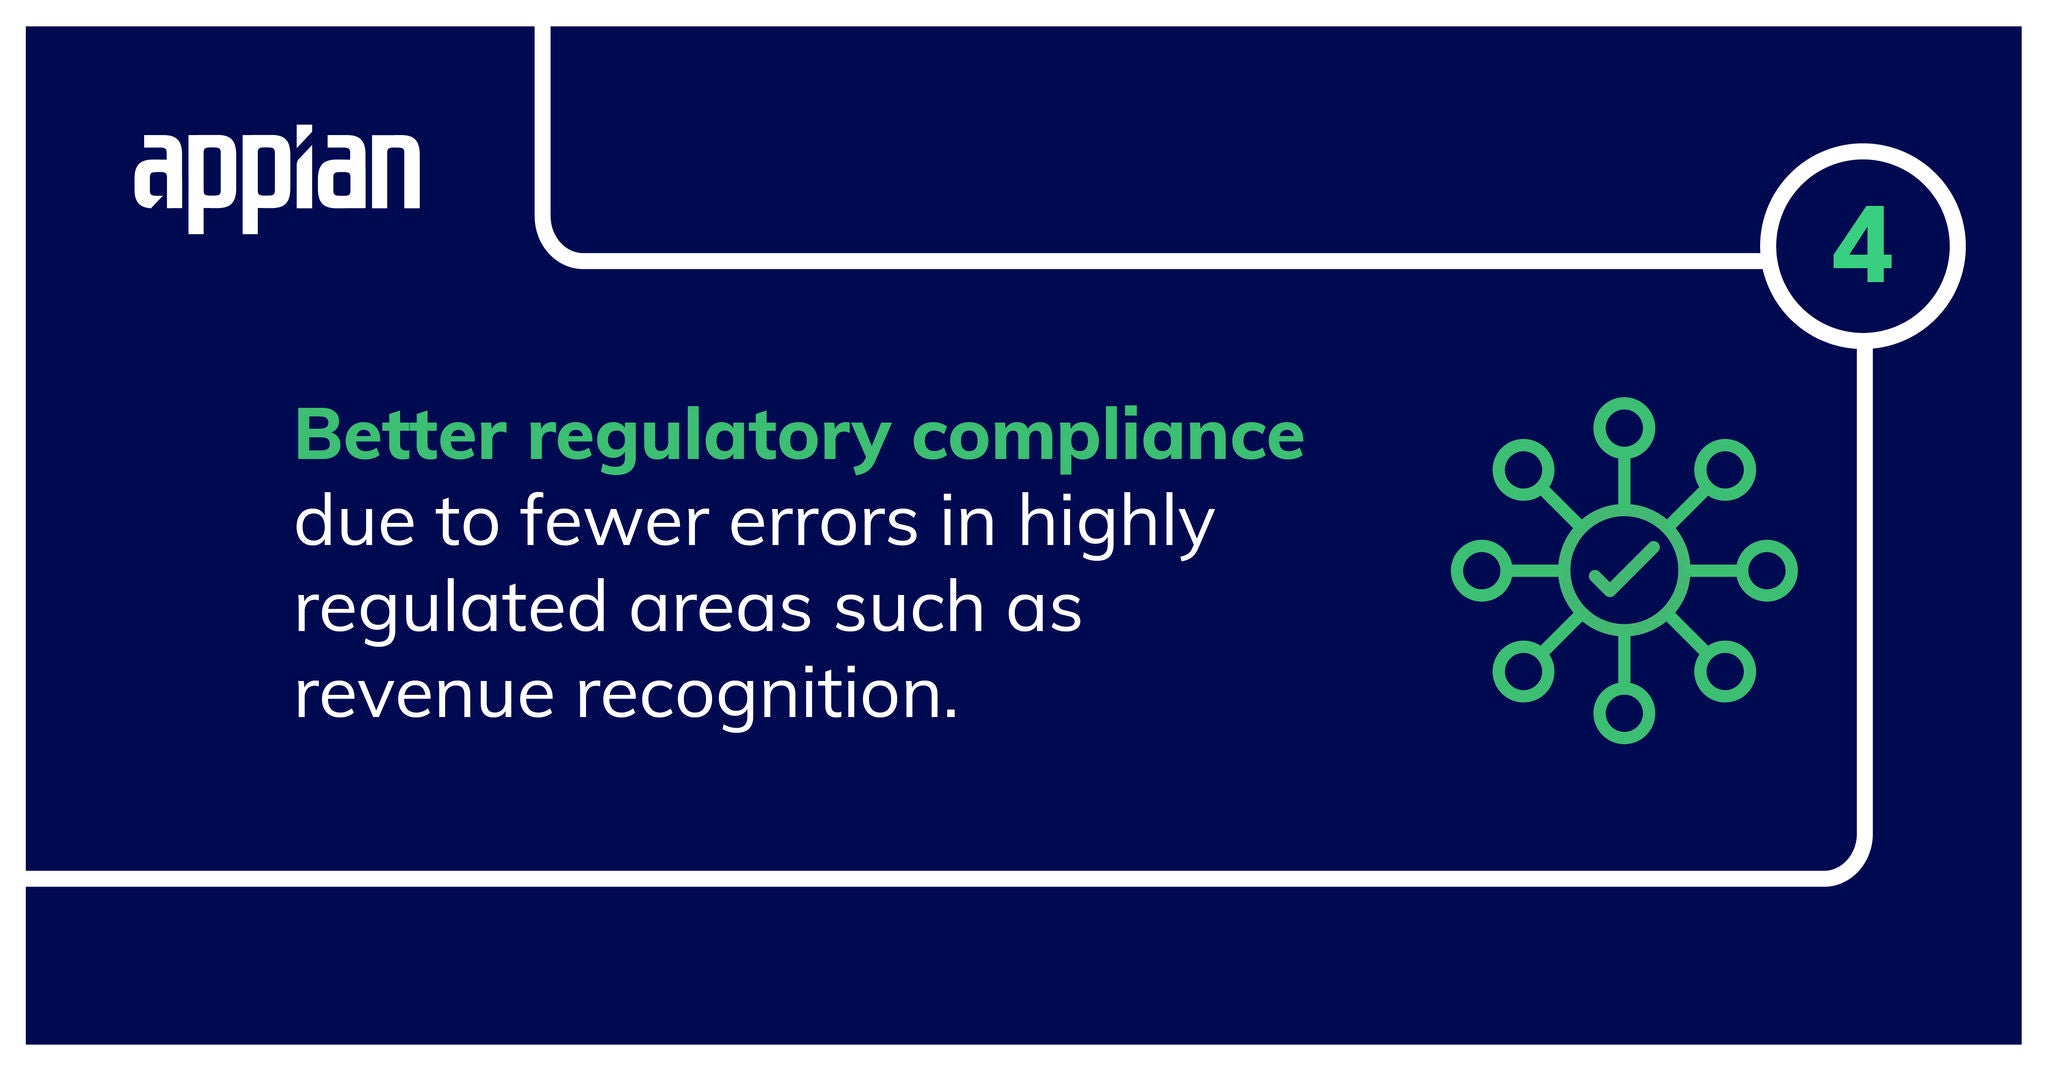 Better regulatory compliance due to fewer errors.